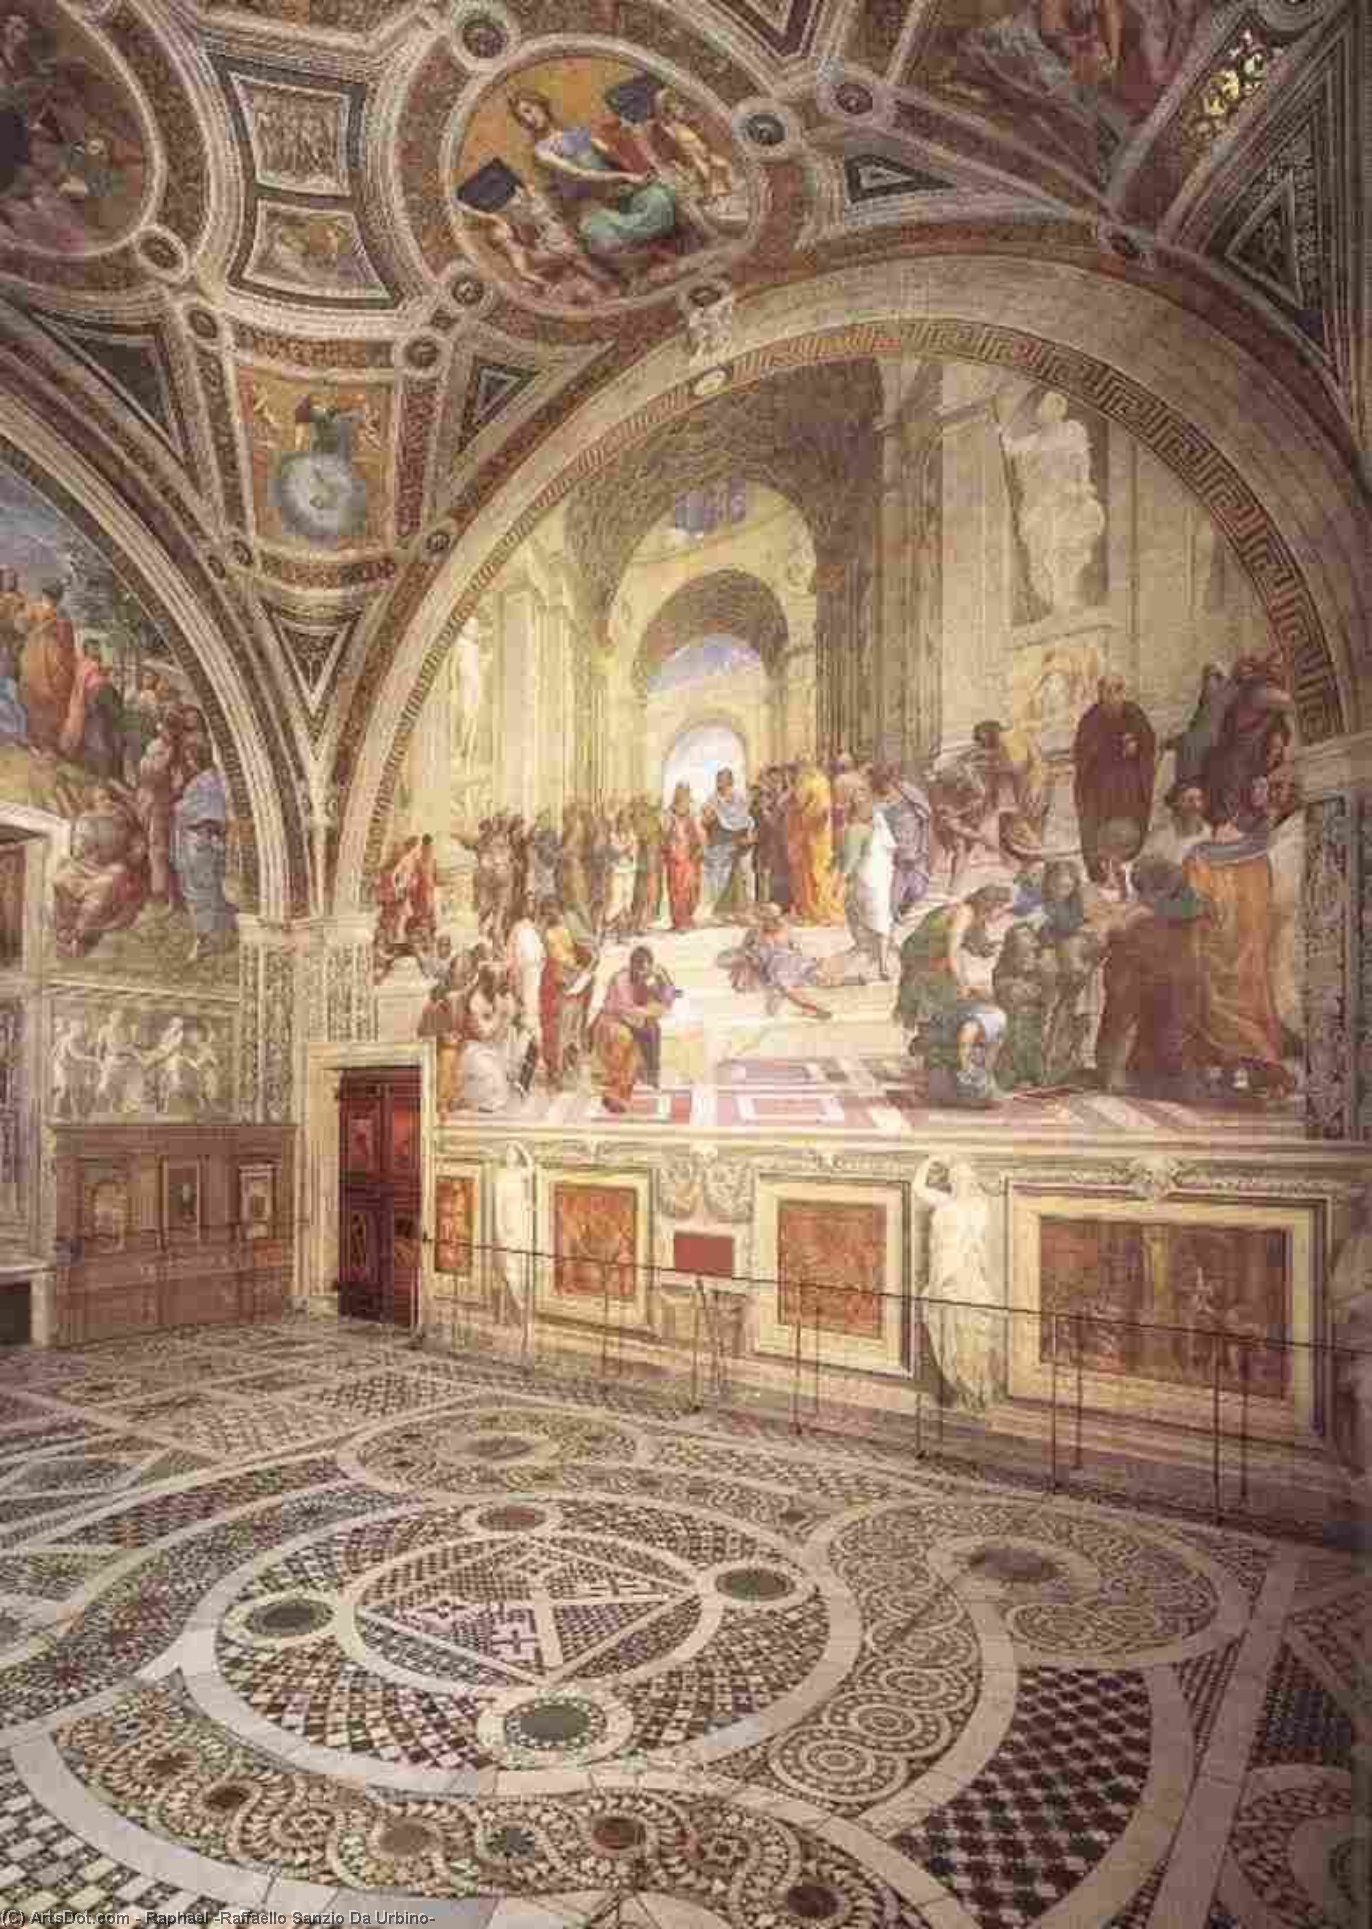 WikiOO.org - Encyclopedia of Fine Arts - Maleri, Artwork Raphael (Raffaello Sanzio Da Urbino) - Stanze Vaticane - View of the Stanza della Segnatura